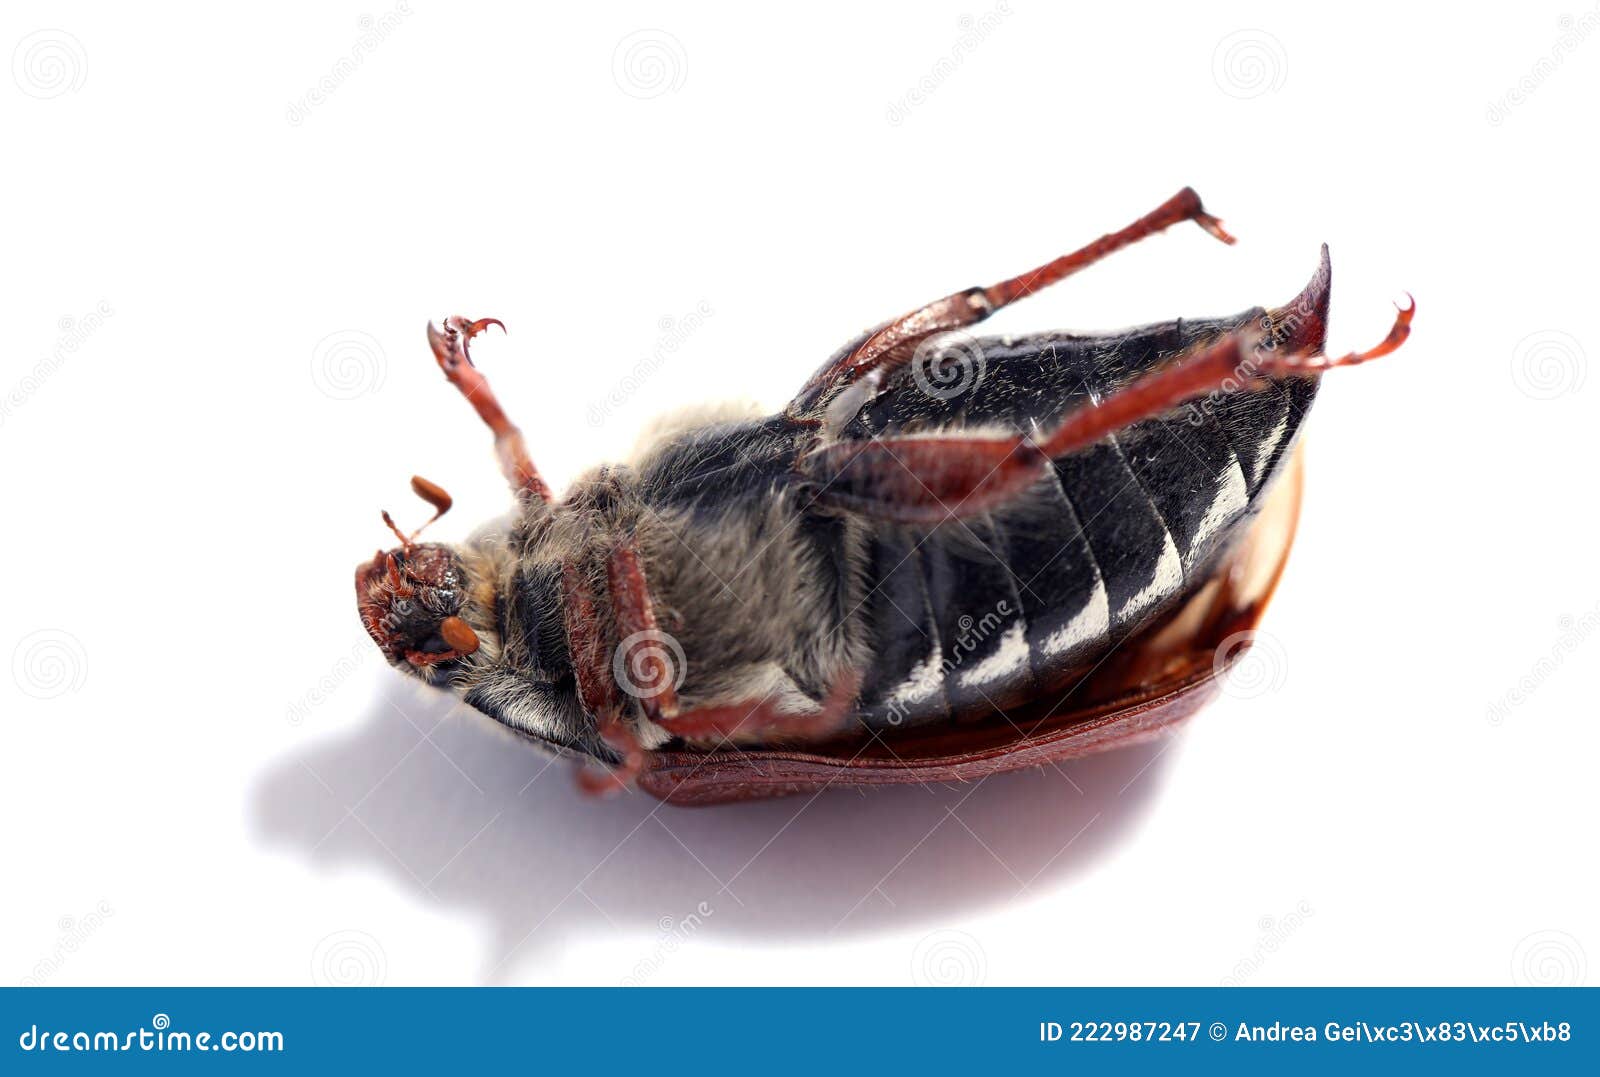 Extinción Insectos De Escarabajo De Cucaracha Imagen de archivo Imagen vivo, muerto: 222987247